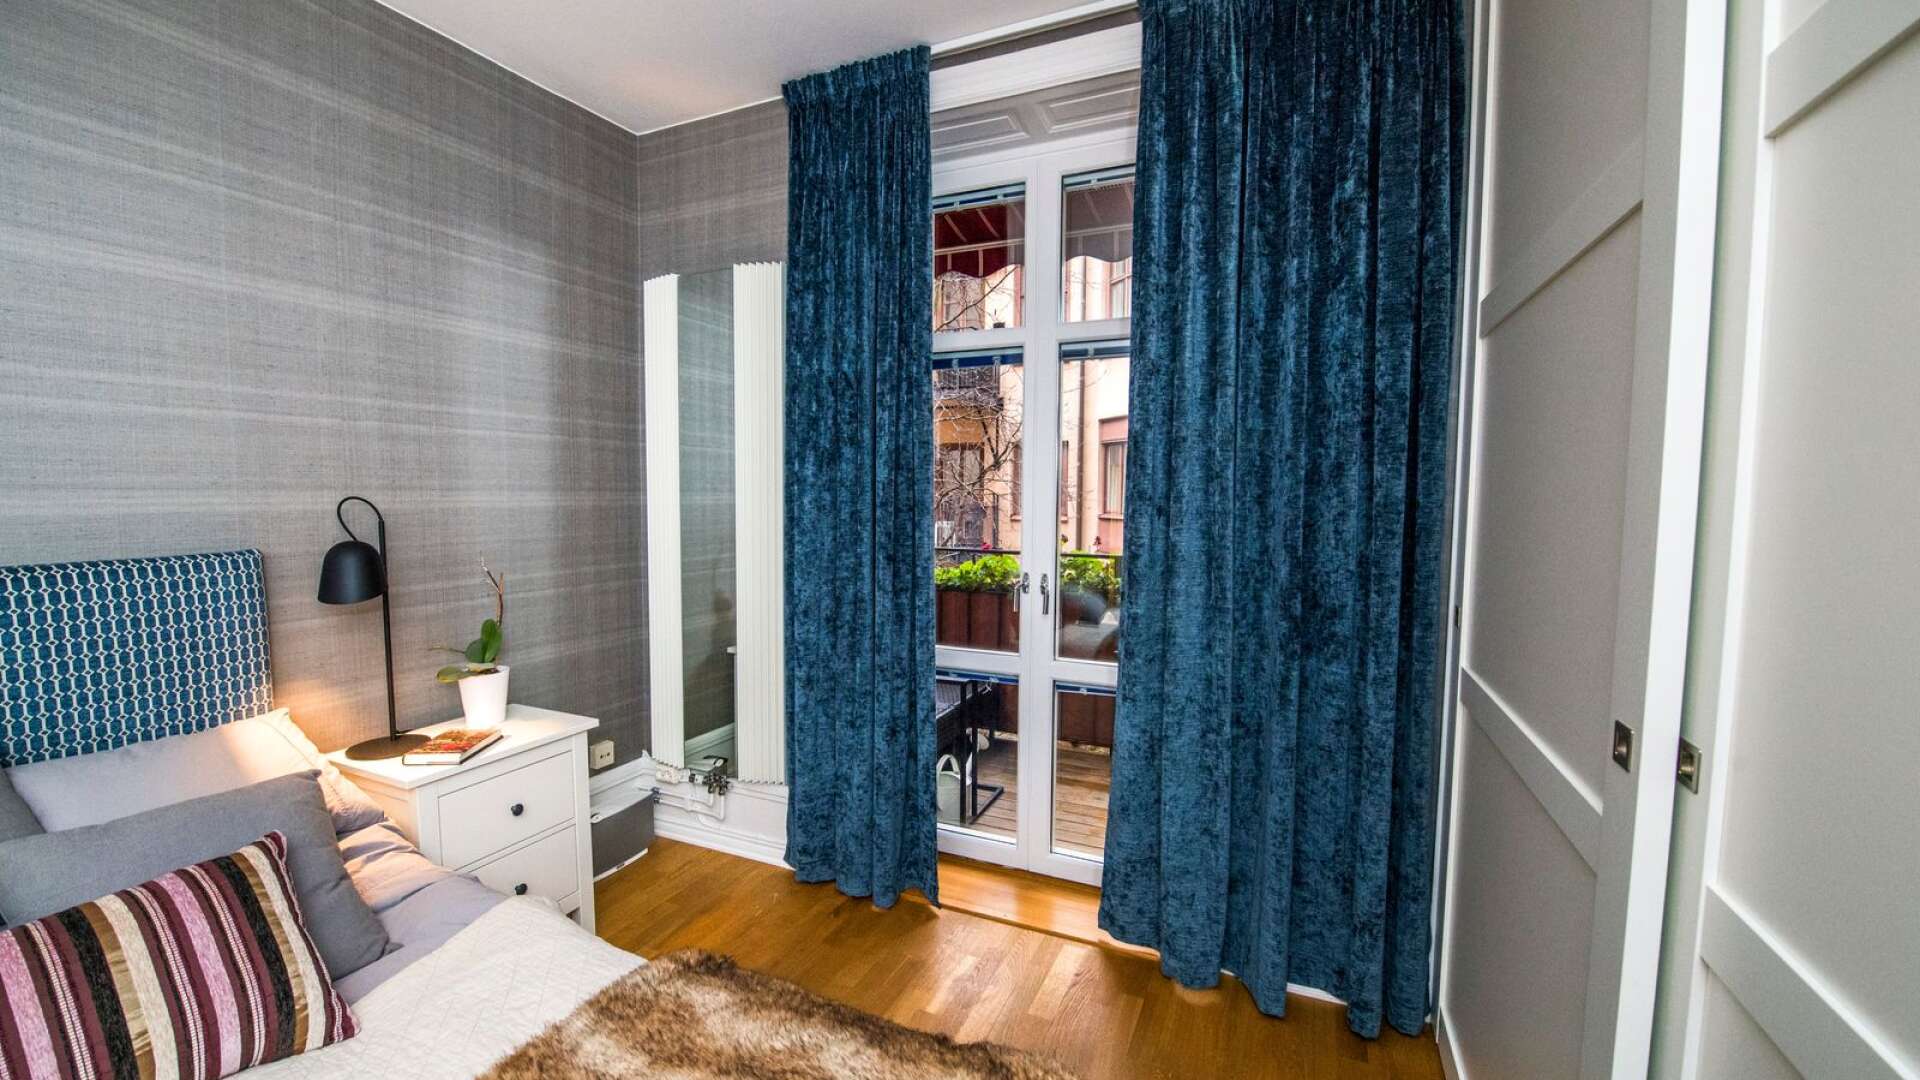 Ett hushåll skulle kunna spara 4 200 kronor per år bara genom att använda gardiner och persienner, vill Svenska solskyddsförbundet uppmärksamma.